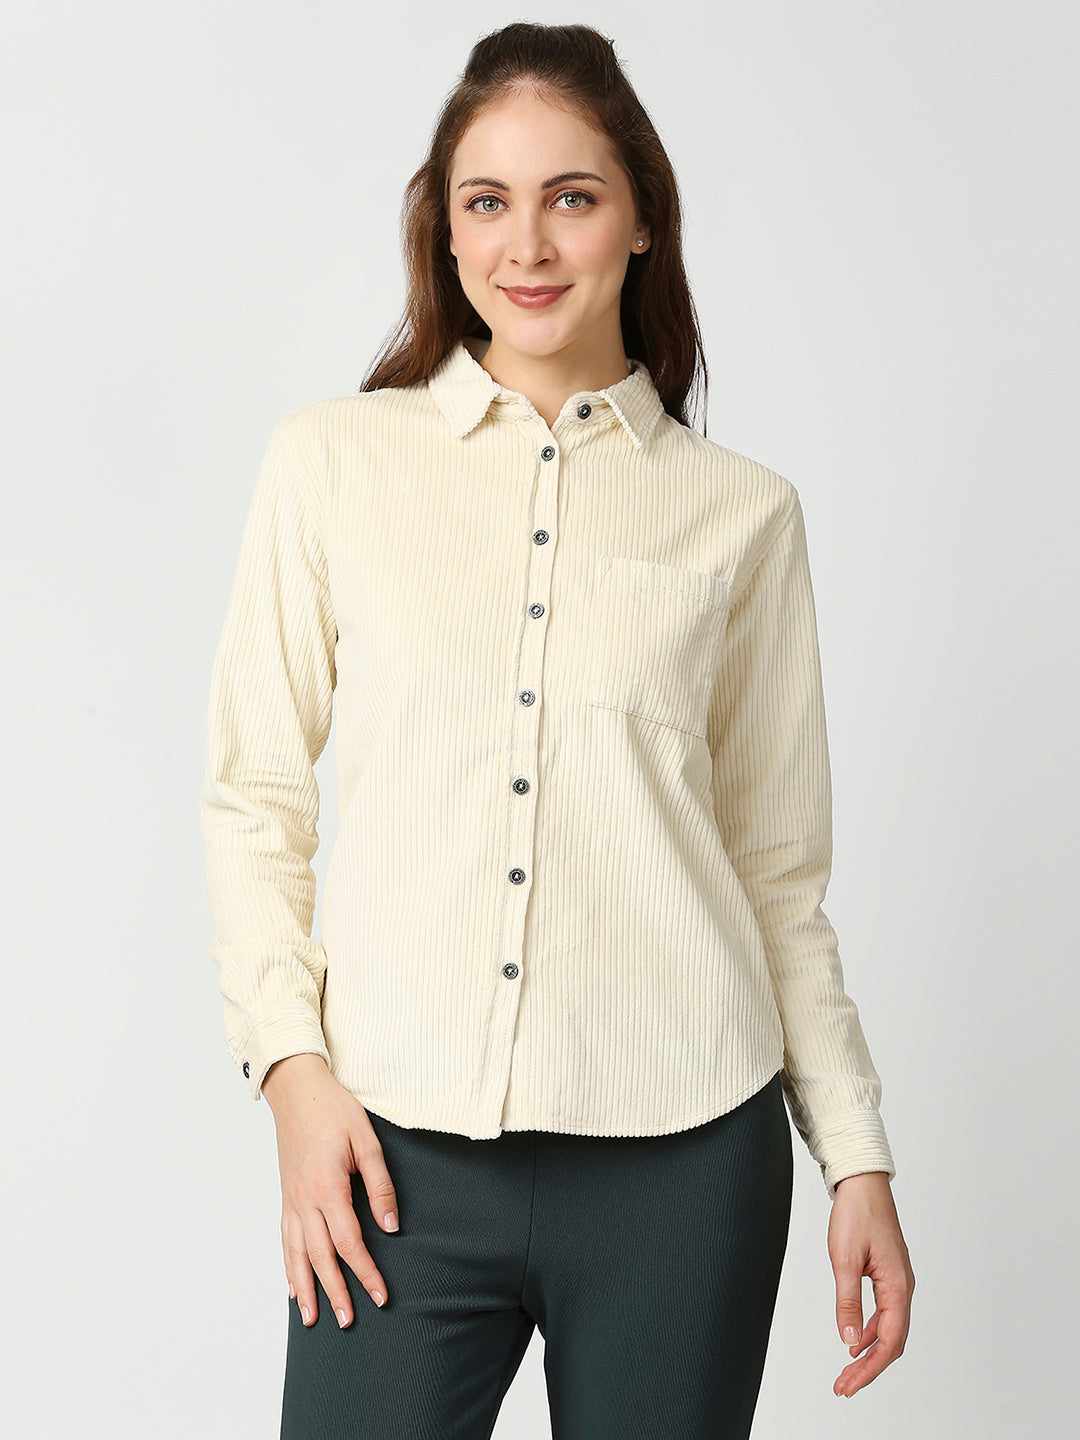 Buy Blamblack Women's Cream Color Baggy Shirt